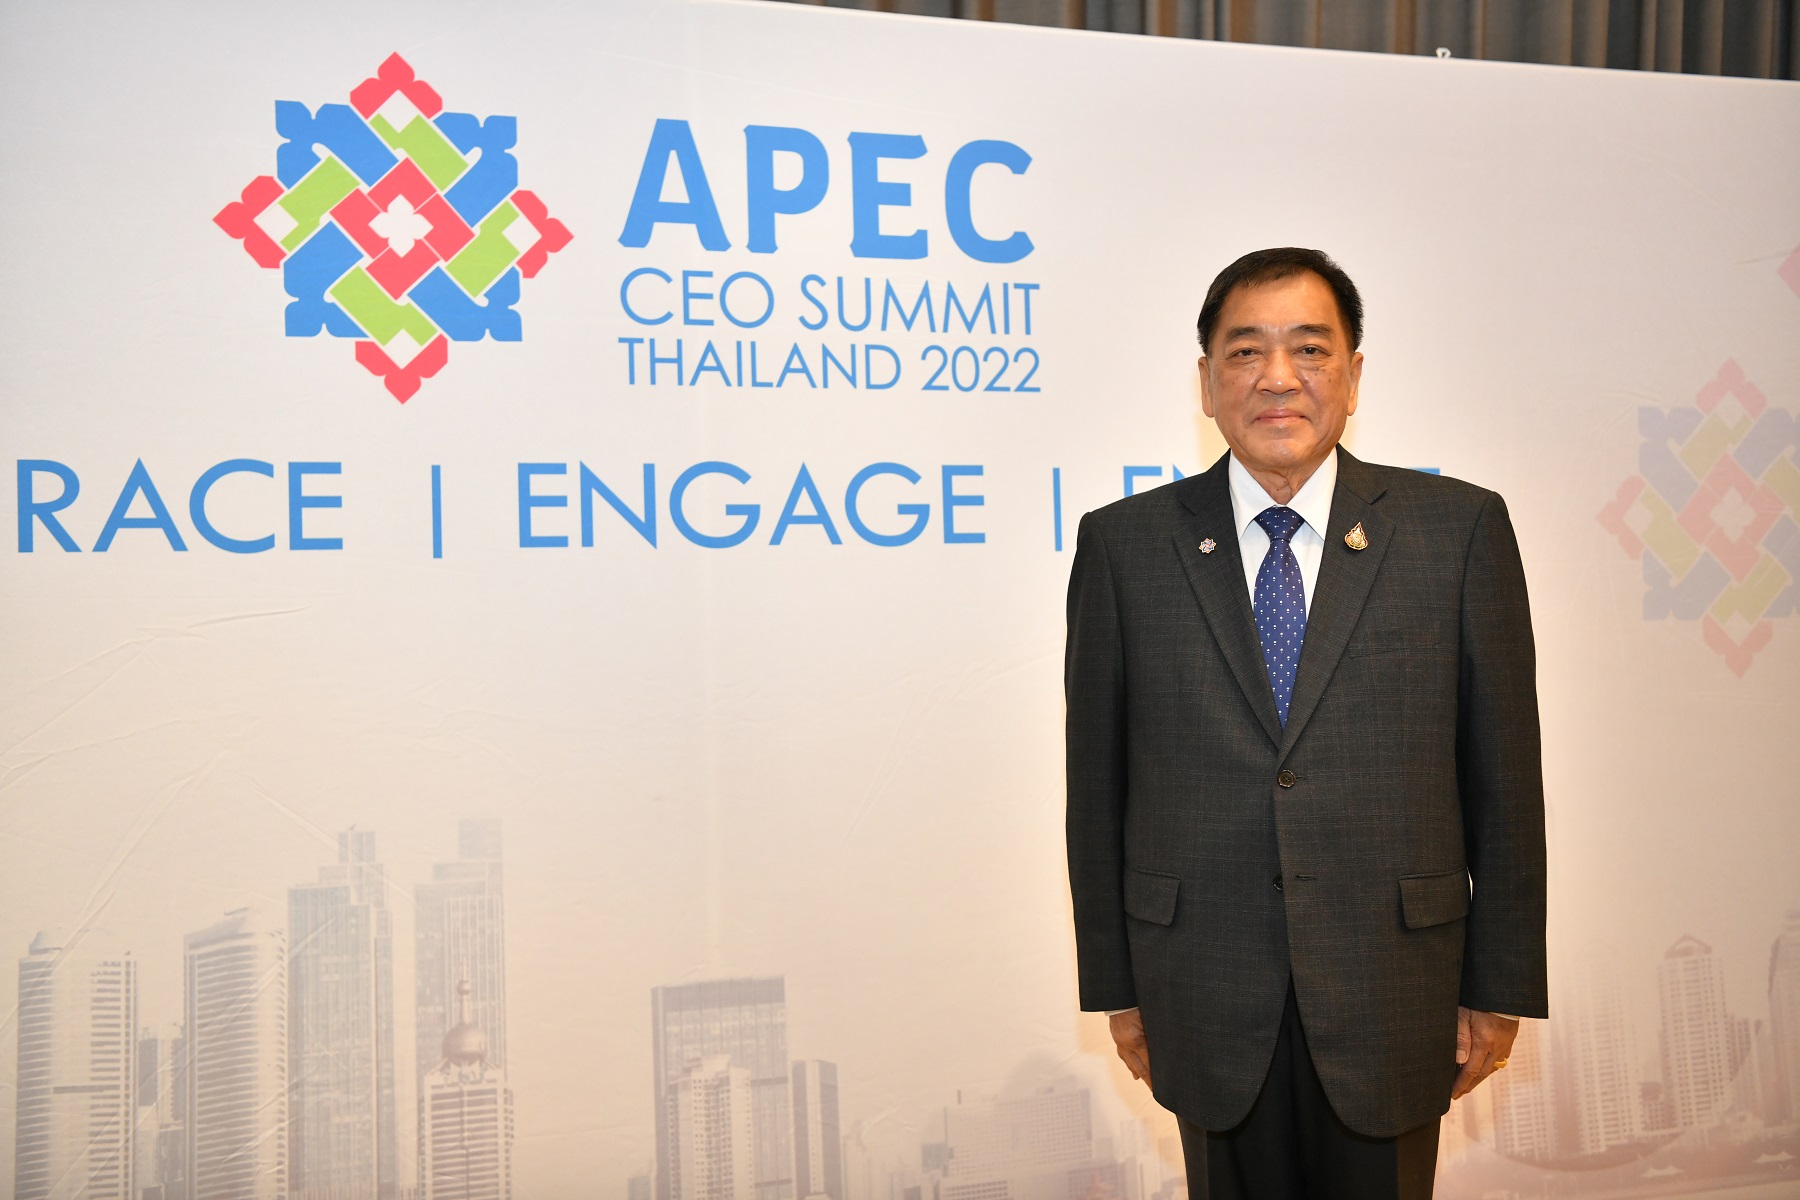 นับถอยหลัง APEC CEO Summit 2022 เวทีแลกเปลี่ยนความคิดเห็นผู้นำธุรกิจแห่งเอเชียแปซิฟิก พร้อมผนึกกำลัง PwC - พันธมิตรด้านองค์ความรู้ ผู้สนับสนุนข้อมูลธุรกิจเชิงลึก, ดร.พจน์ อร่ามวัฒนานนท์ ประธาน APEC CEO Summit 2022 และสมาชิกสภาที่ปรึกษาทางธุรกิจเอเปคไทย